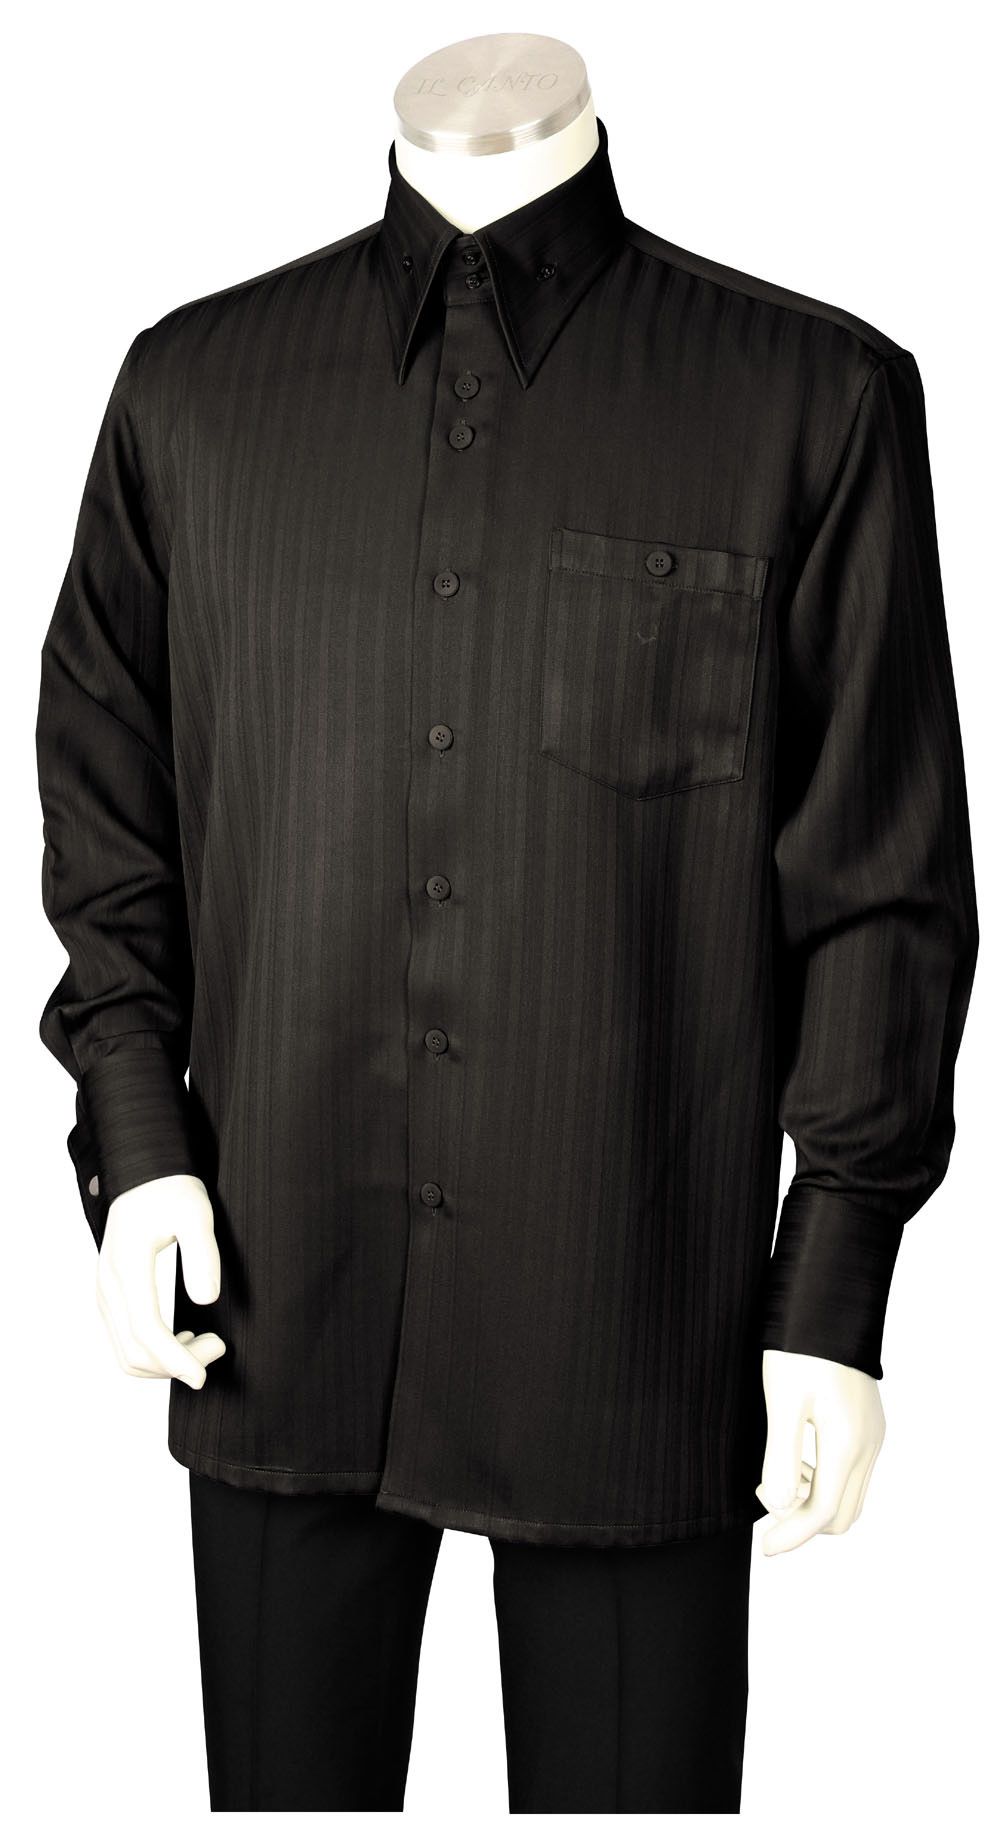 Canto Men's 2 Piece Long Sleeve Walking Suit - Subtle Stripe